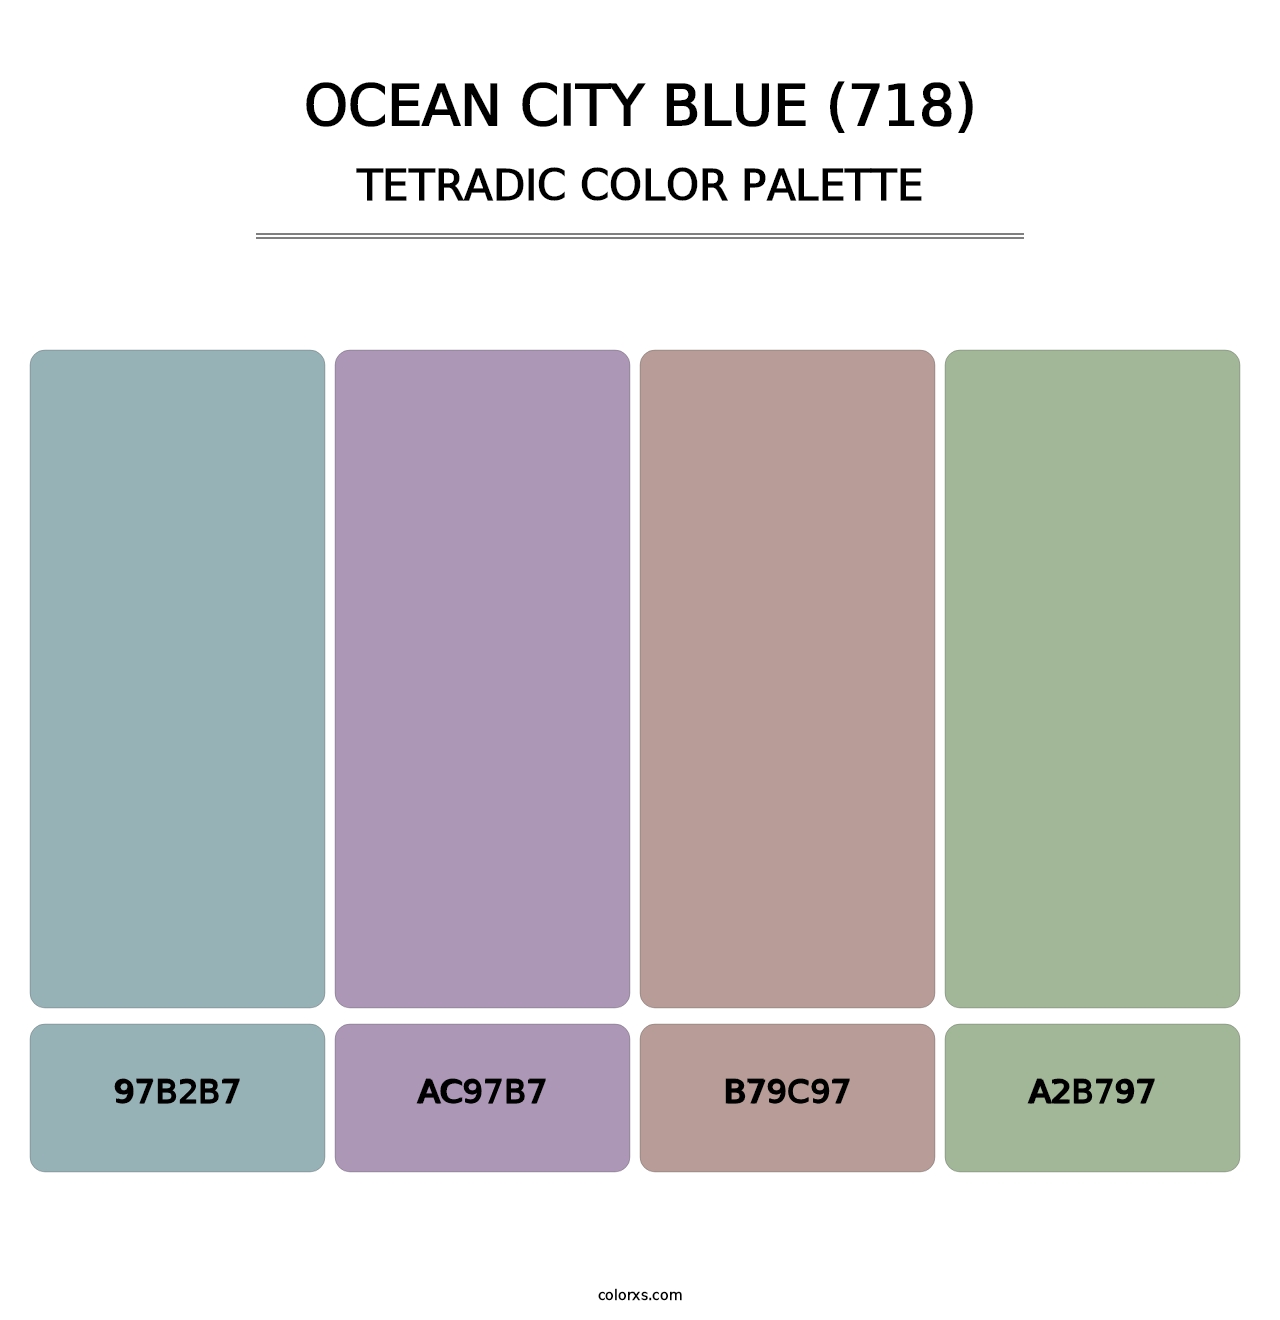 Ocean City Blue (718) - Tetradic Color Palette